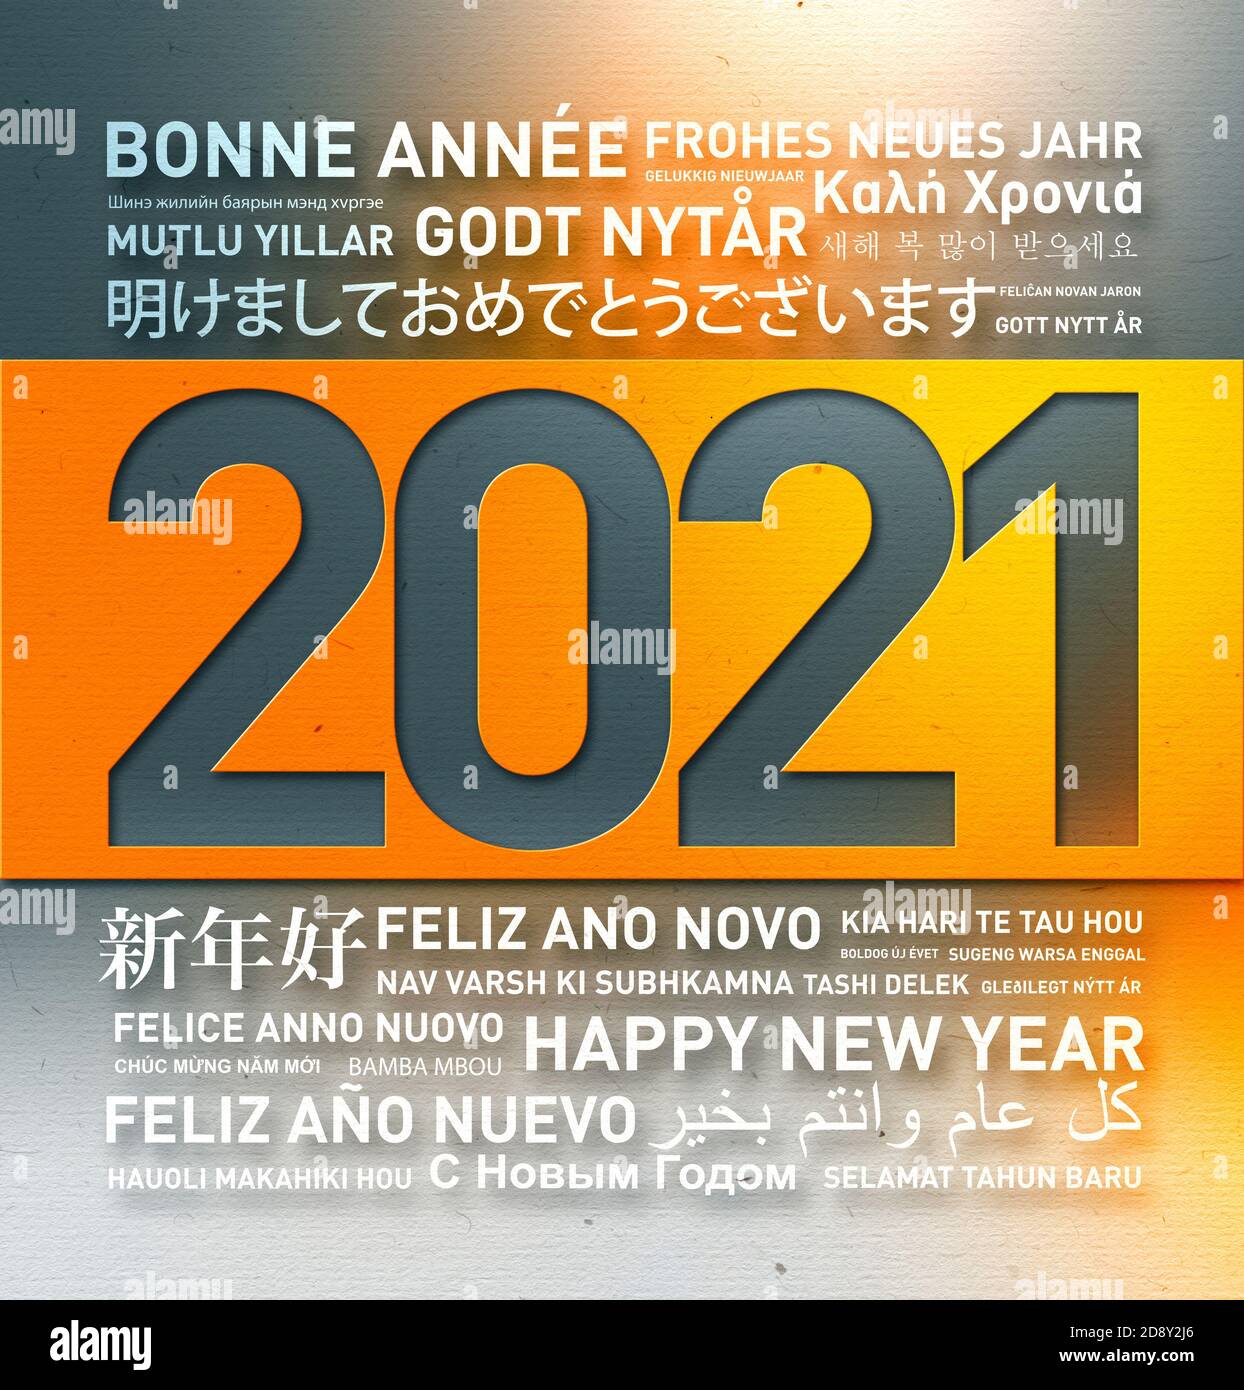 Bonne année 2021 carte de voeux du monde entier à différentes langues Banque D'Images